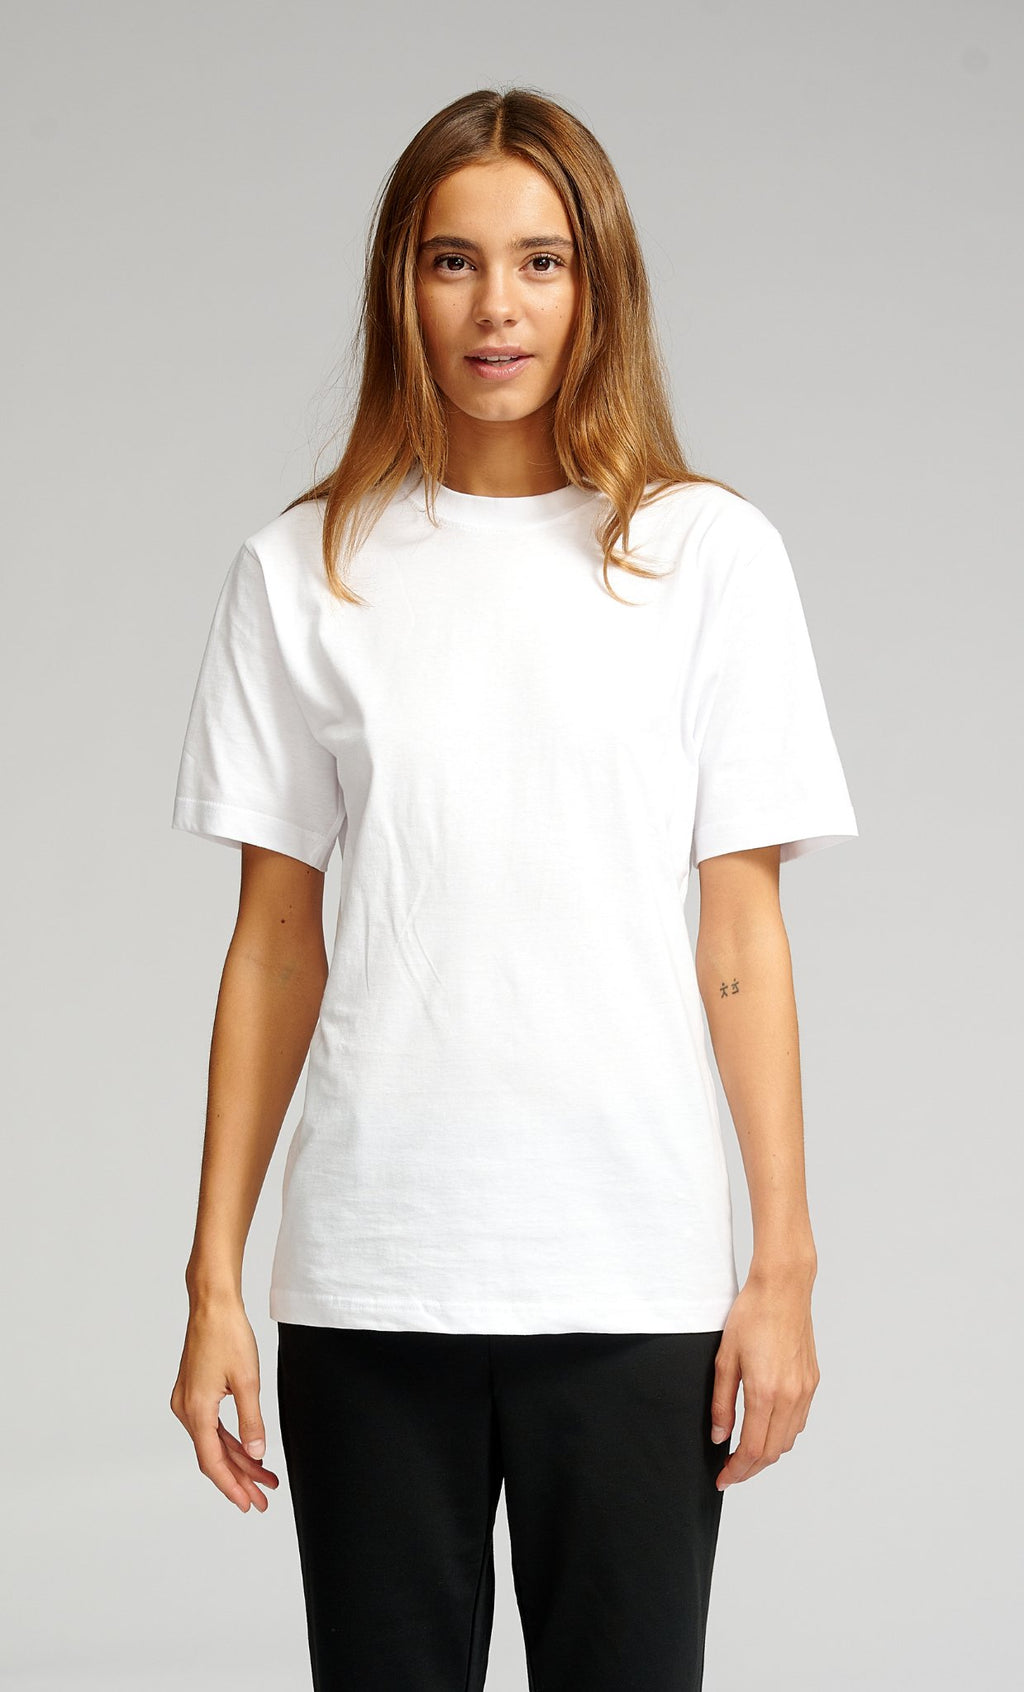 Υπερμεγέθη μπλουζάκι - λευκό